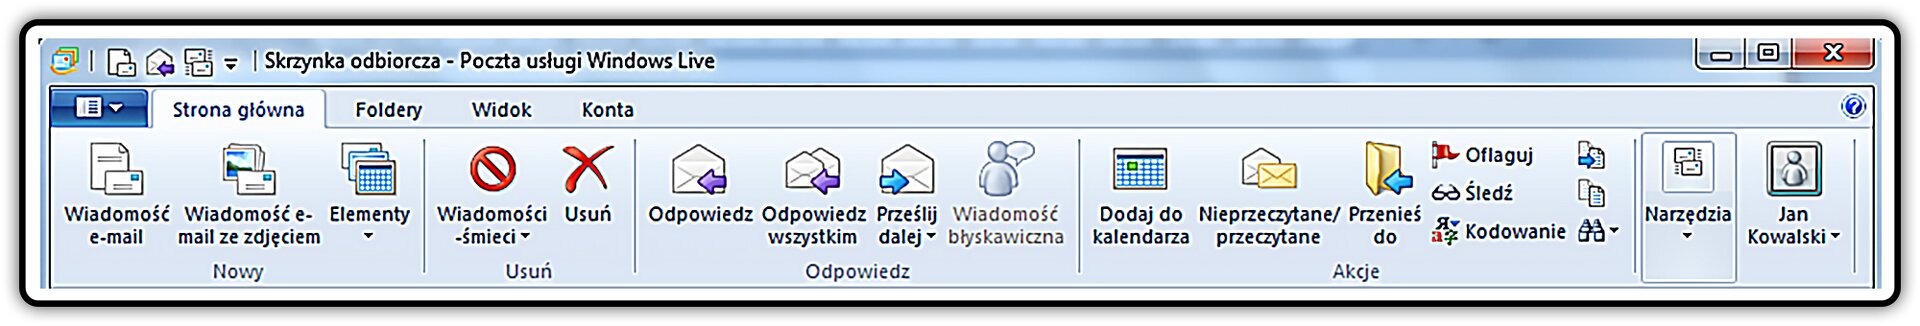 Zrzut fragmentu okna: Skrzynka odbiorcza- Poczta usługi Windows Live